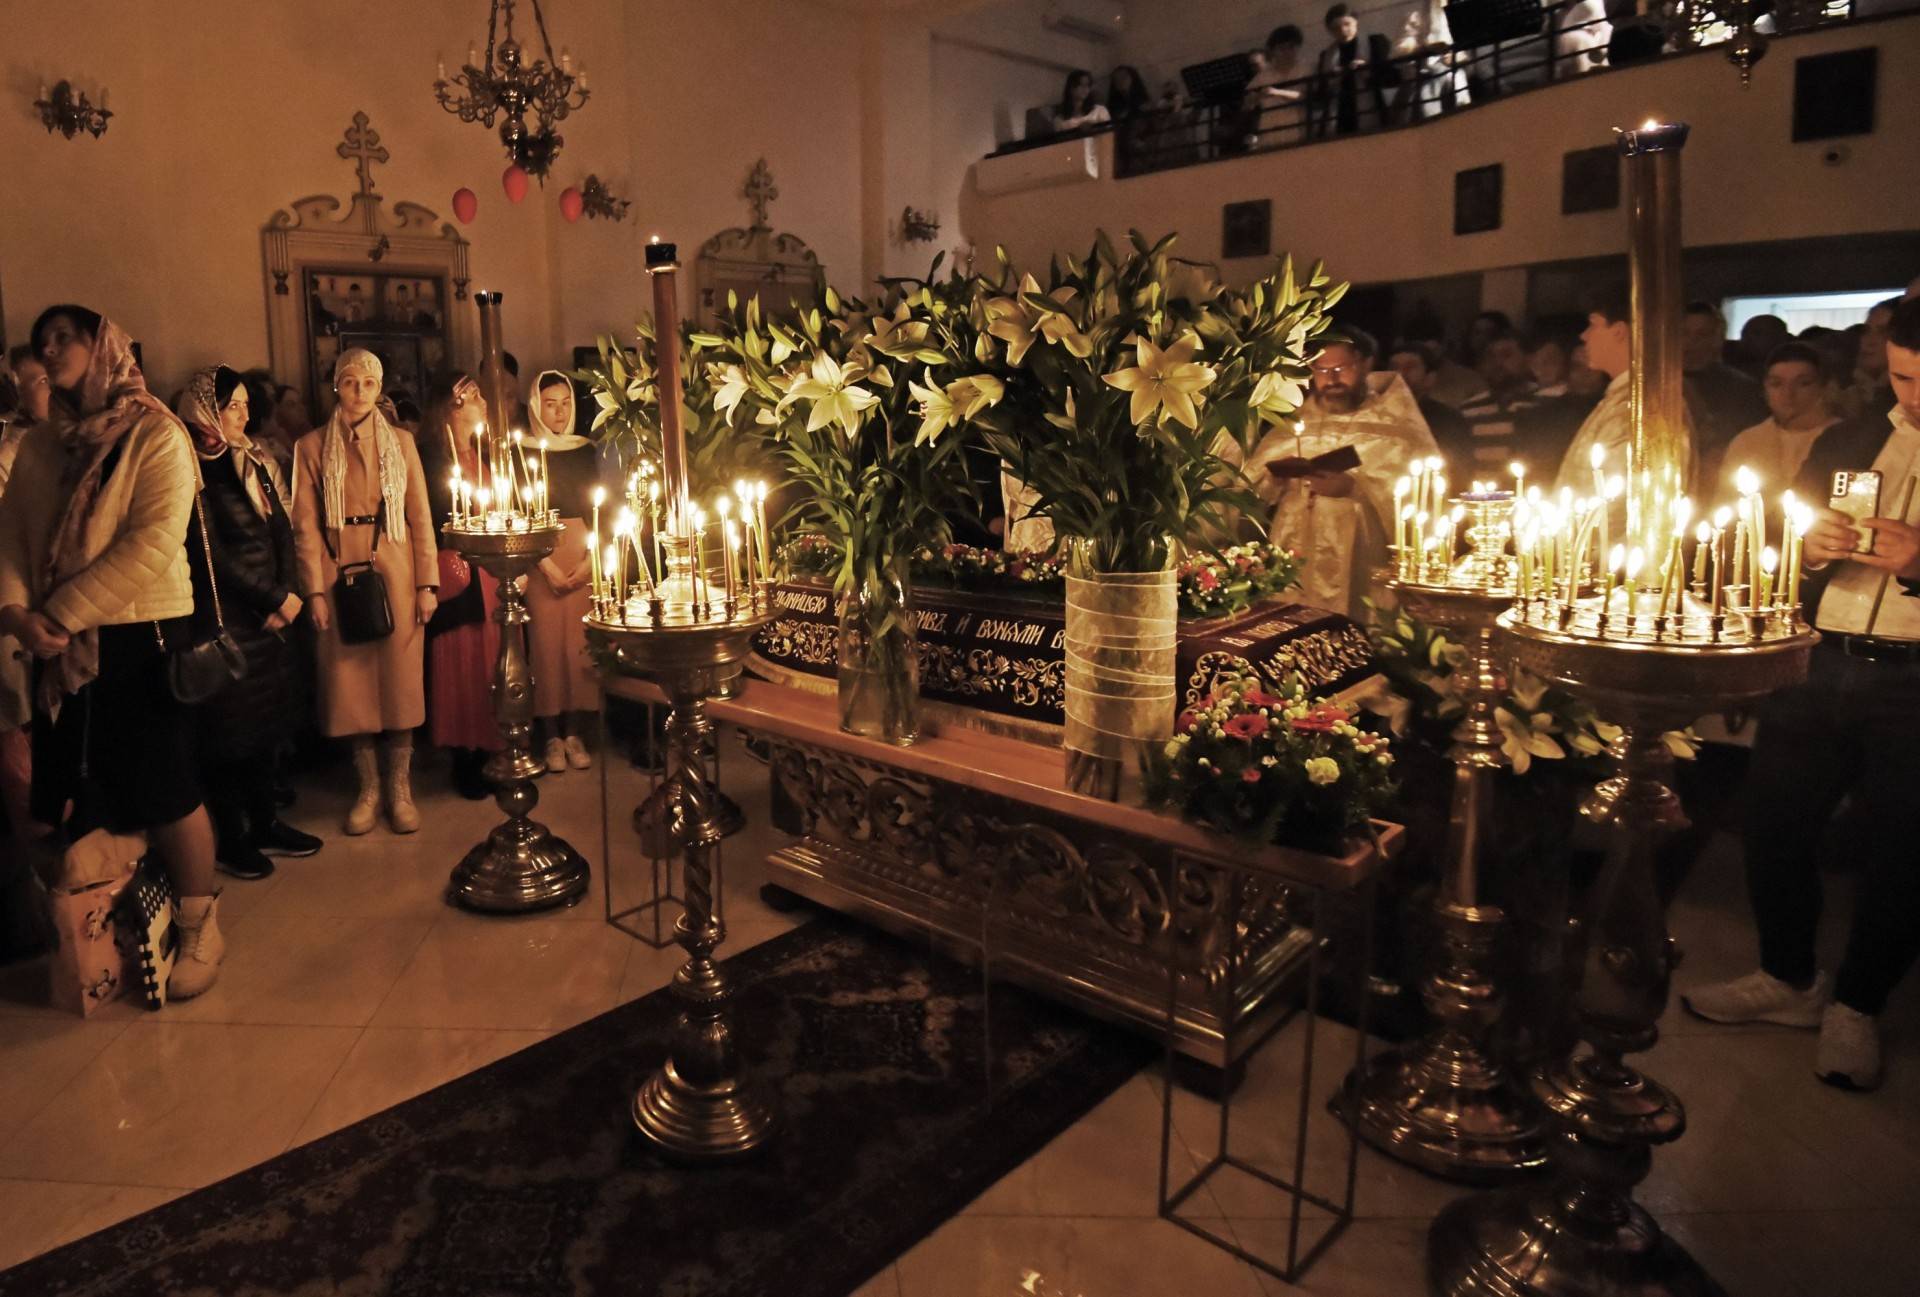 Prawosławna Wielkanoc w Krakowie, kilkugodzinna nocna liturgia